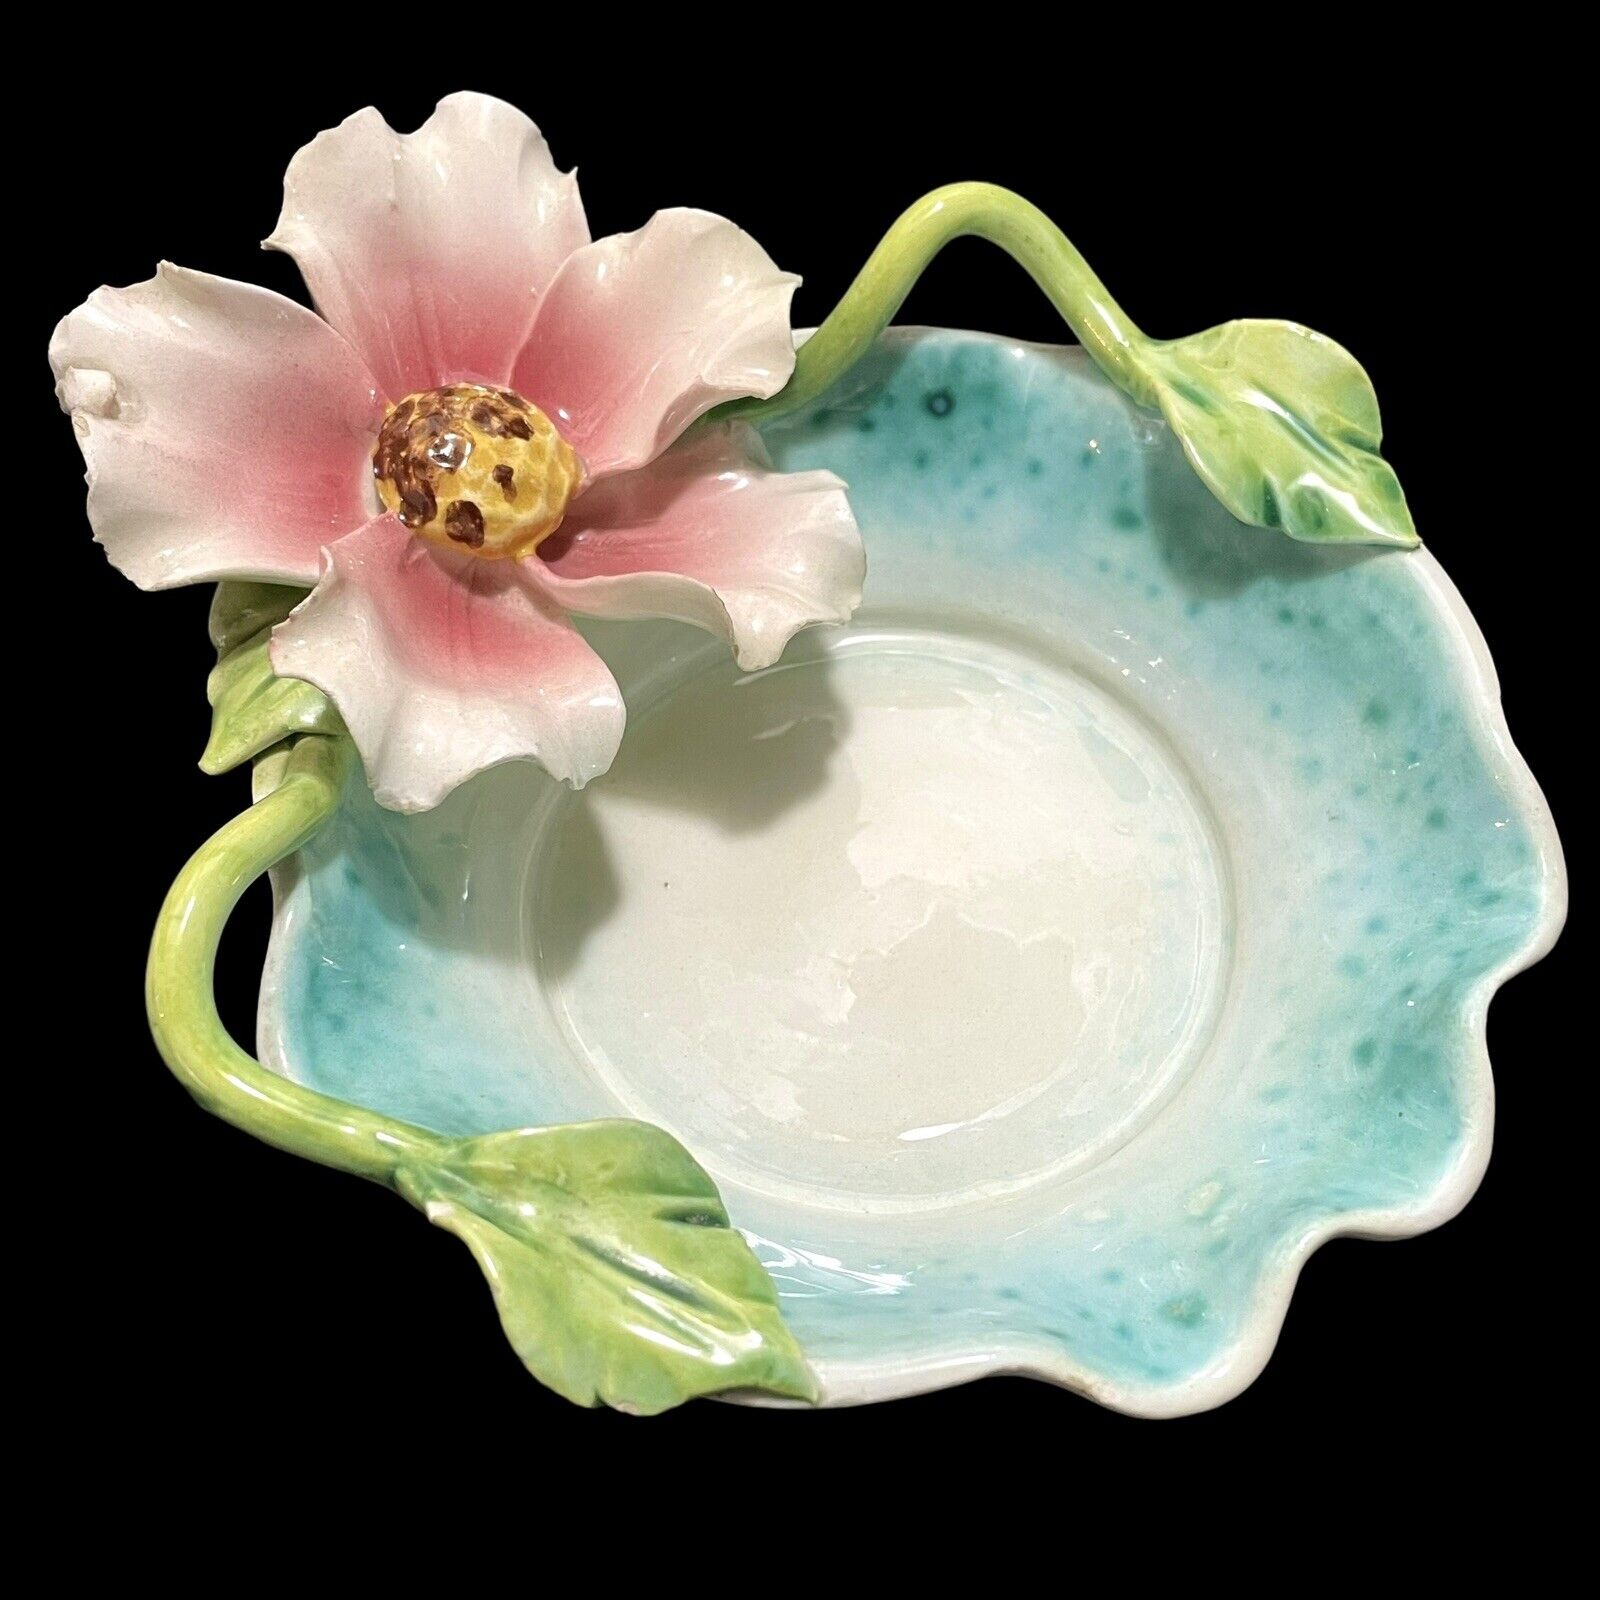 Vintage 1950s Italian Majolica Pottery Trinket Dish / Ashtray Handmade Flower